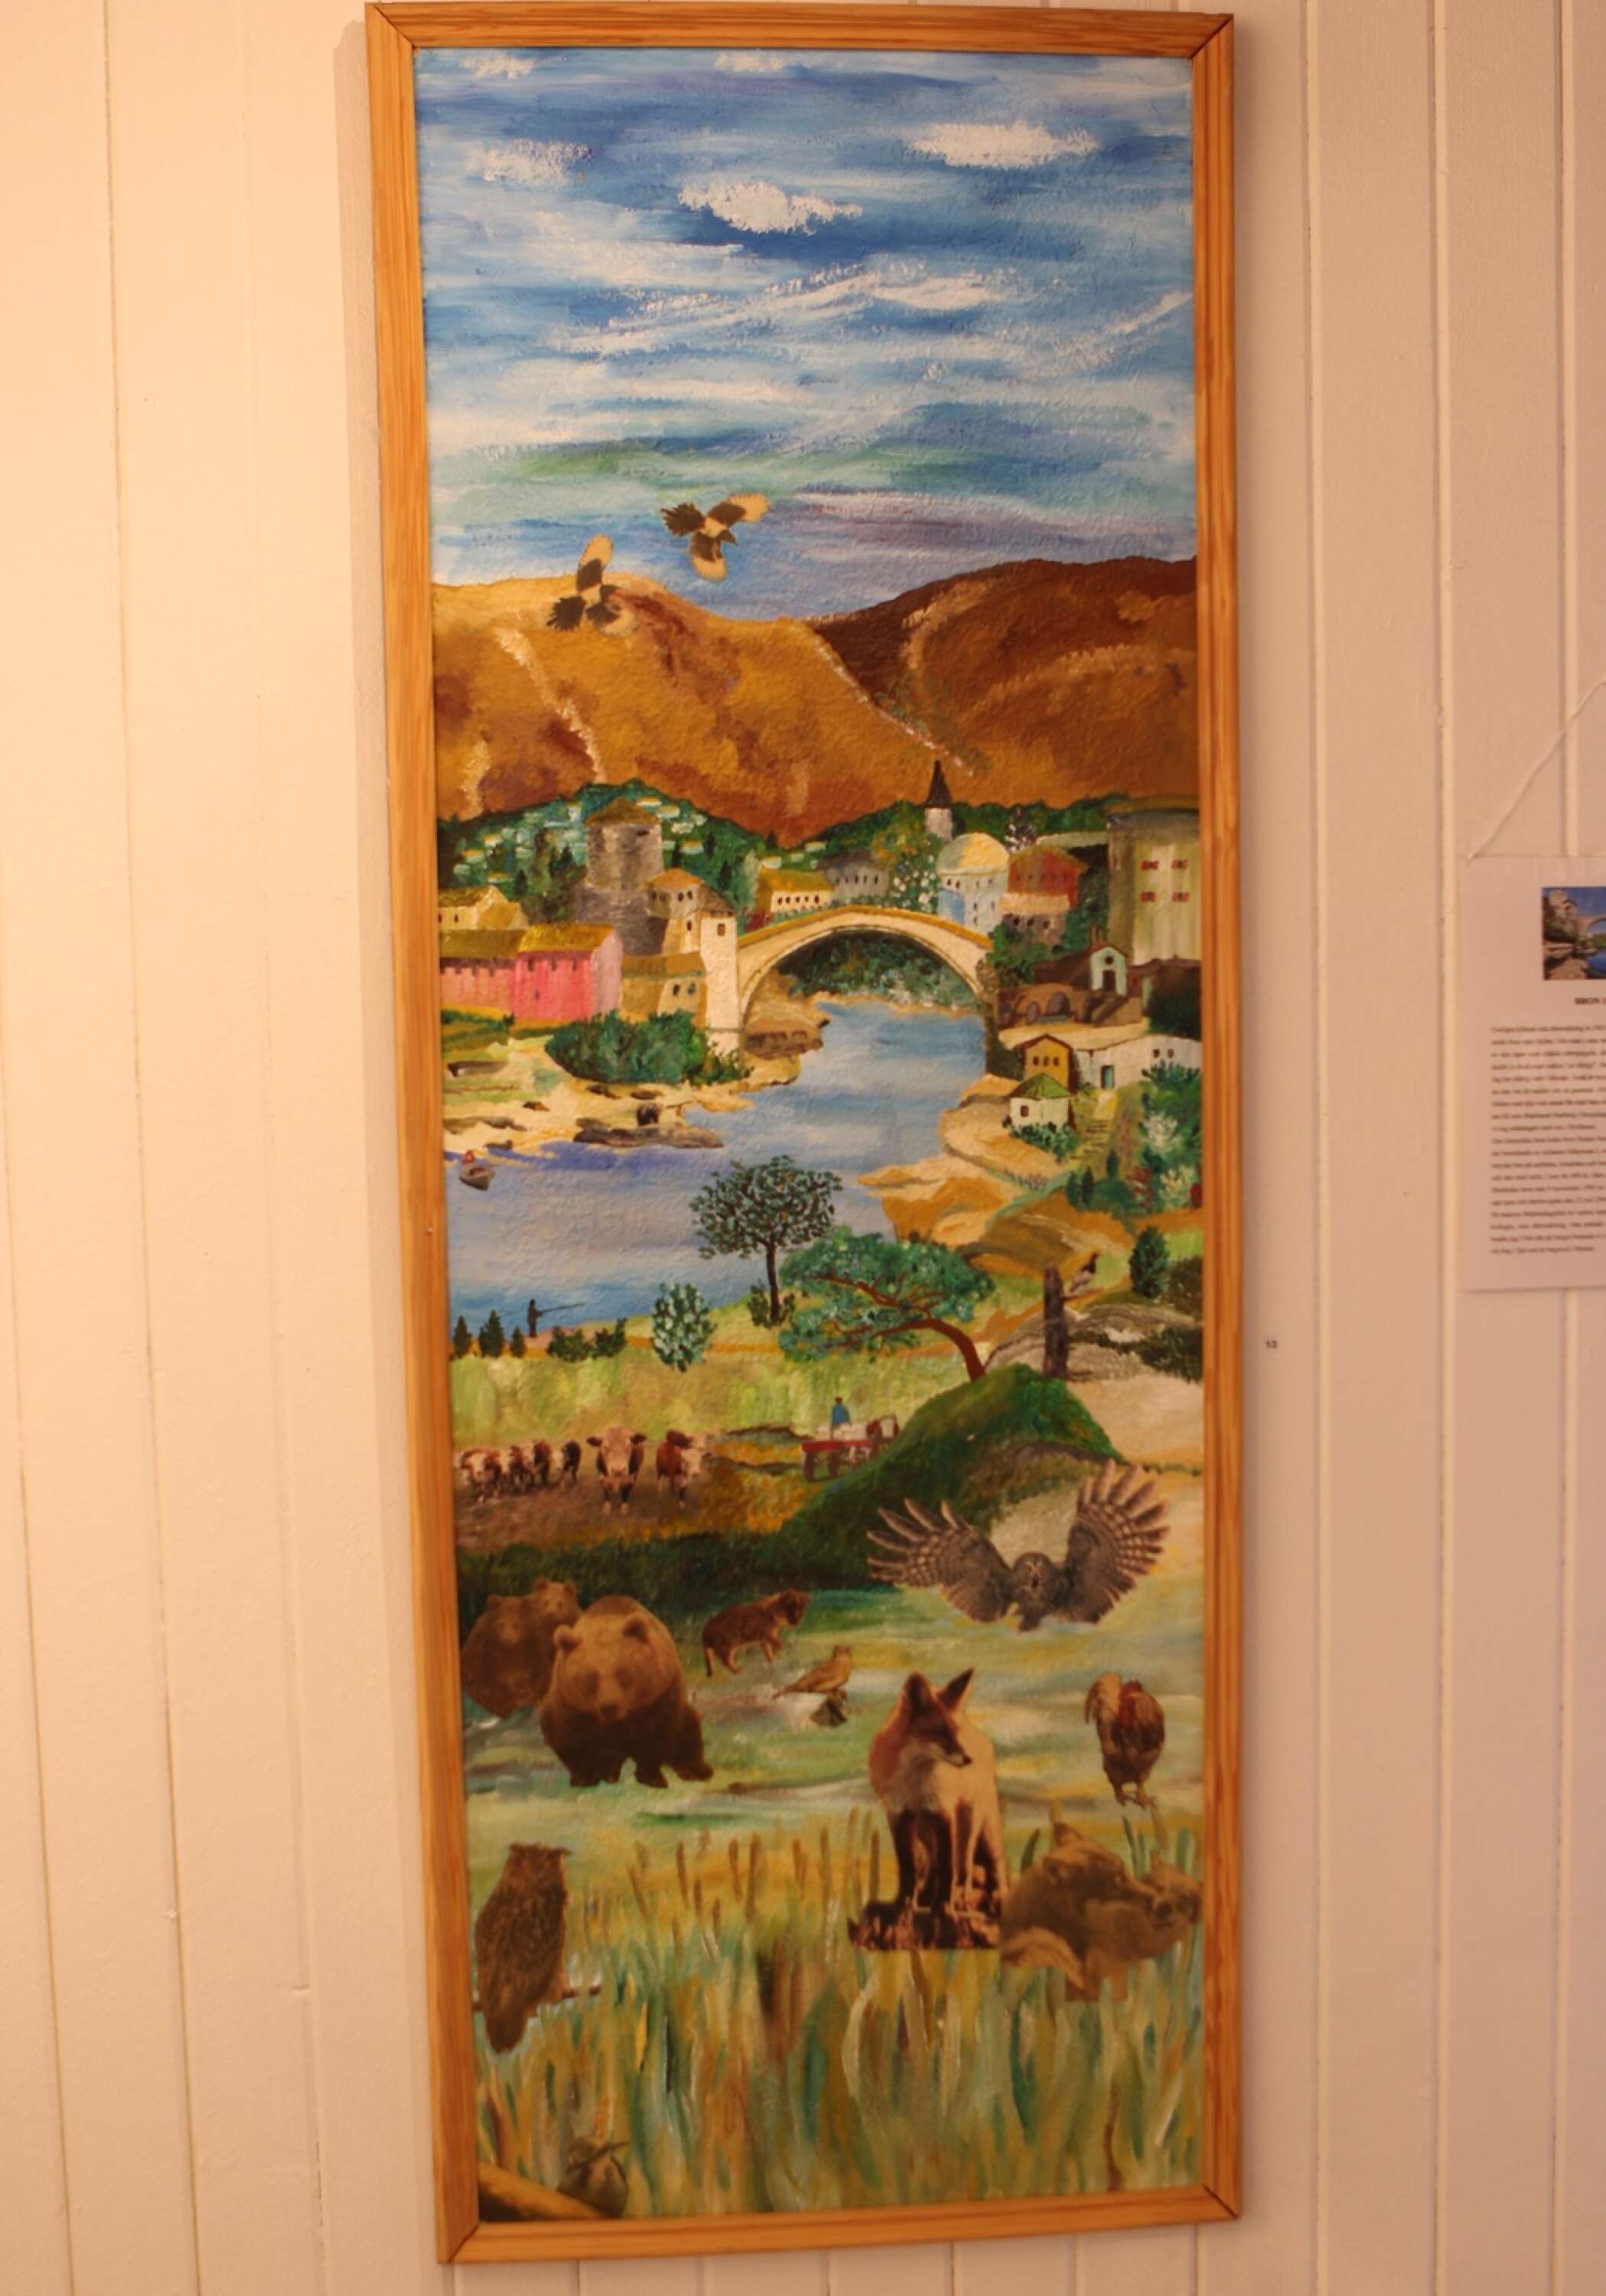 Bron i Mostar är en detaljrik målning. Bilden betyder mycket för Karin Stridh på ett personligt plan.